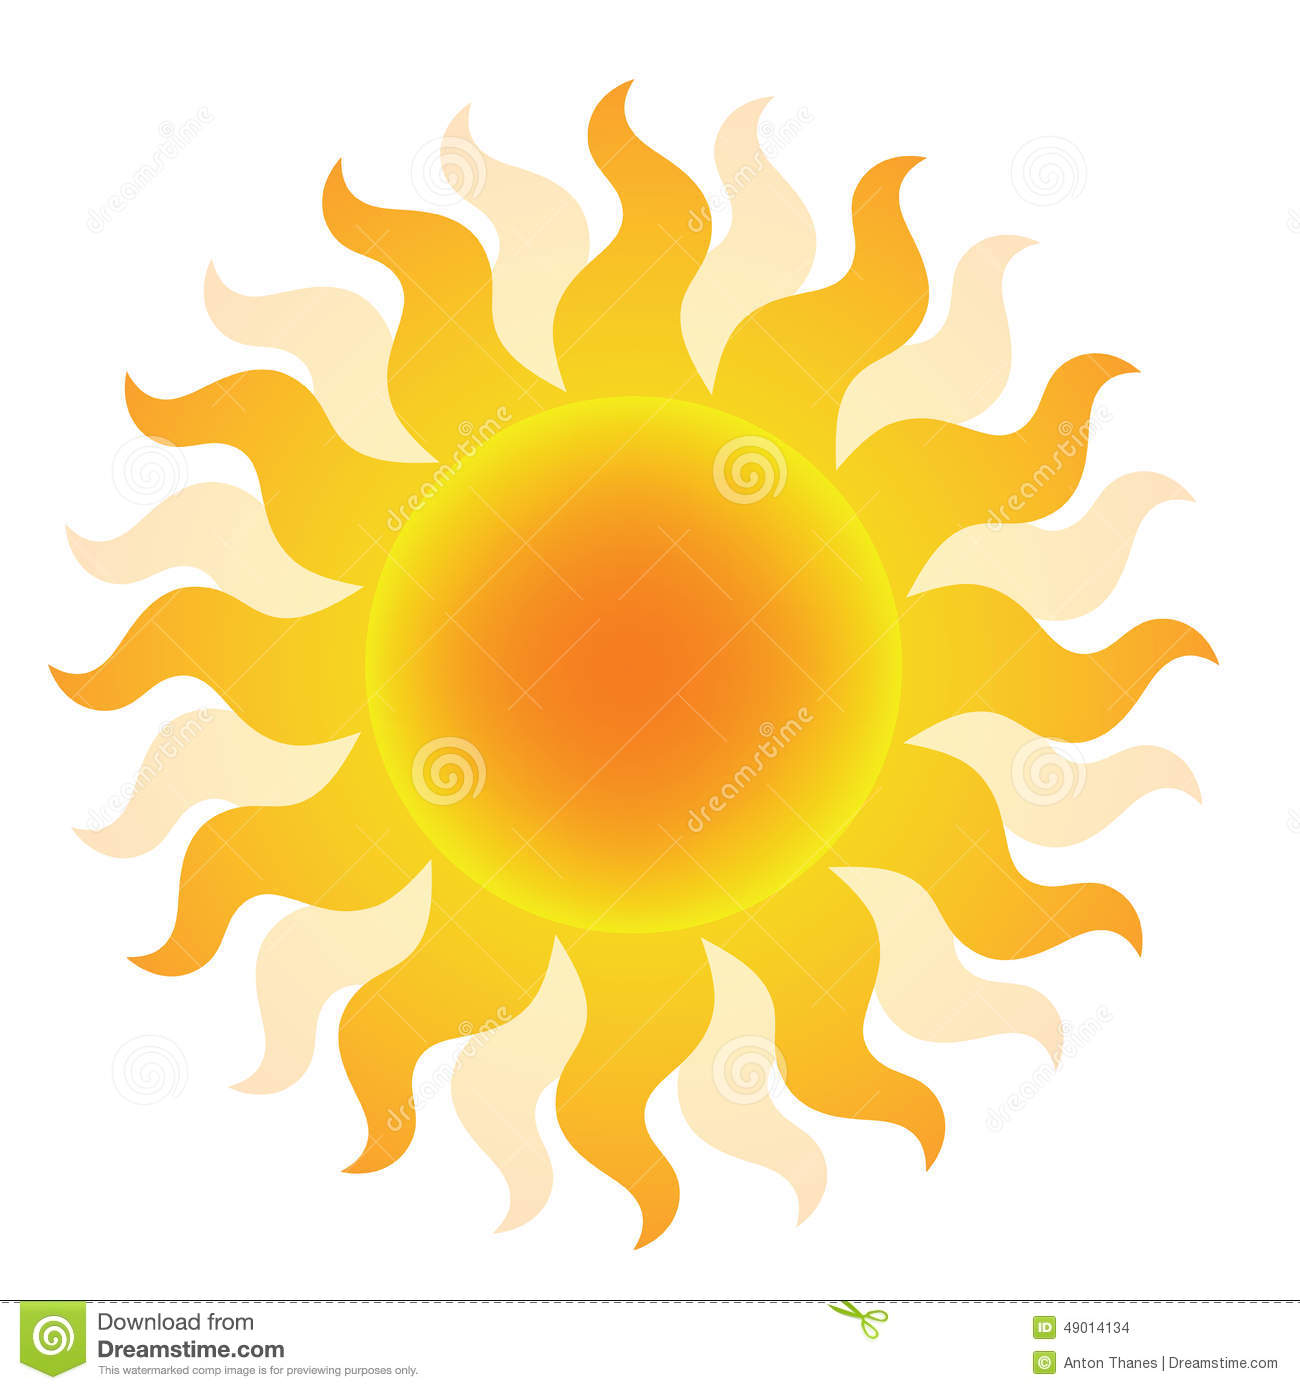 Sun Logo For Pinterest